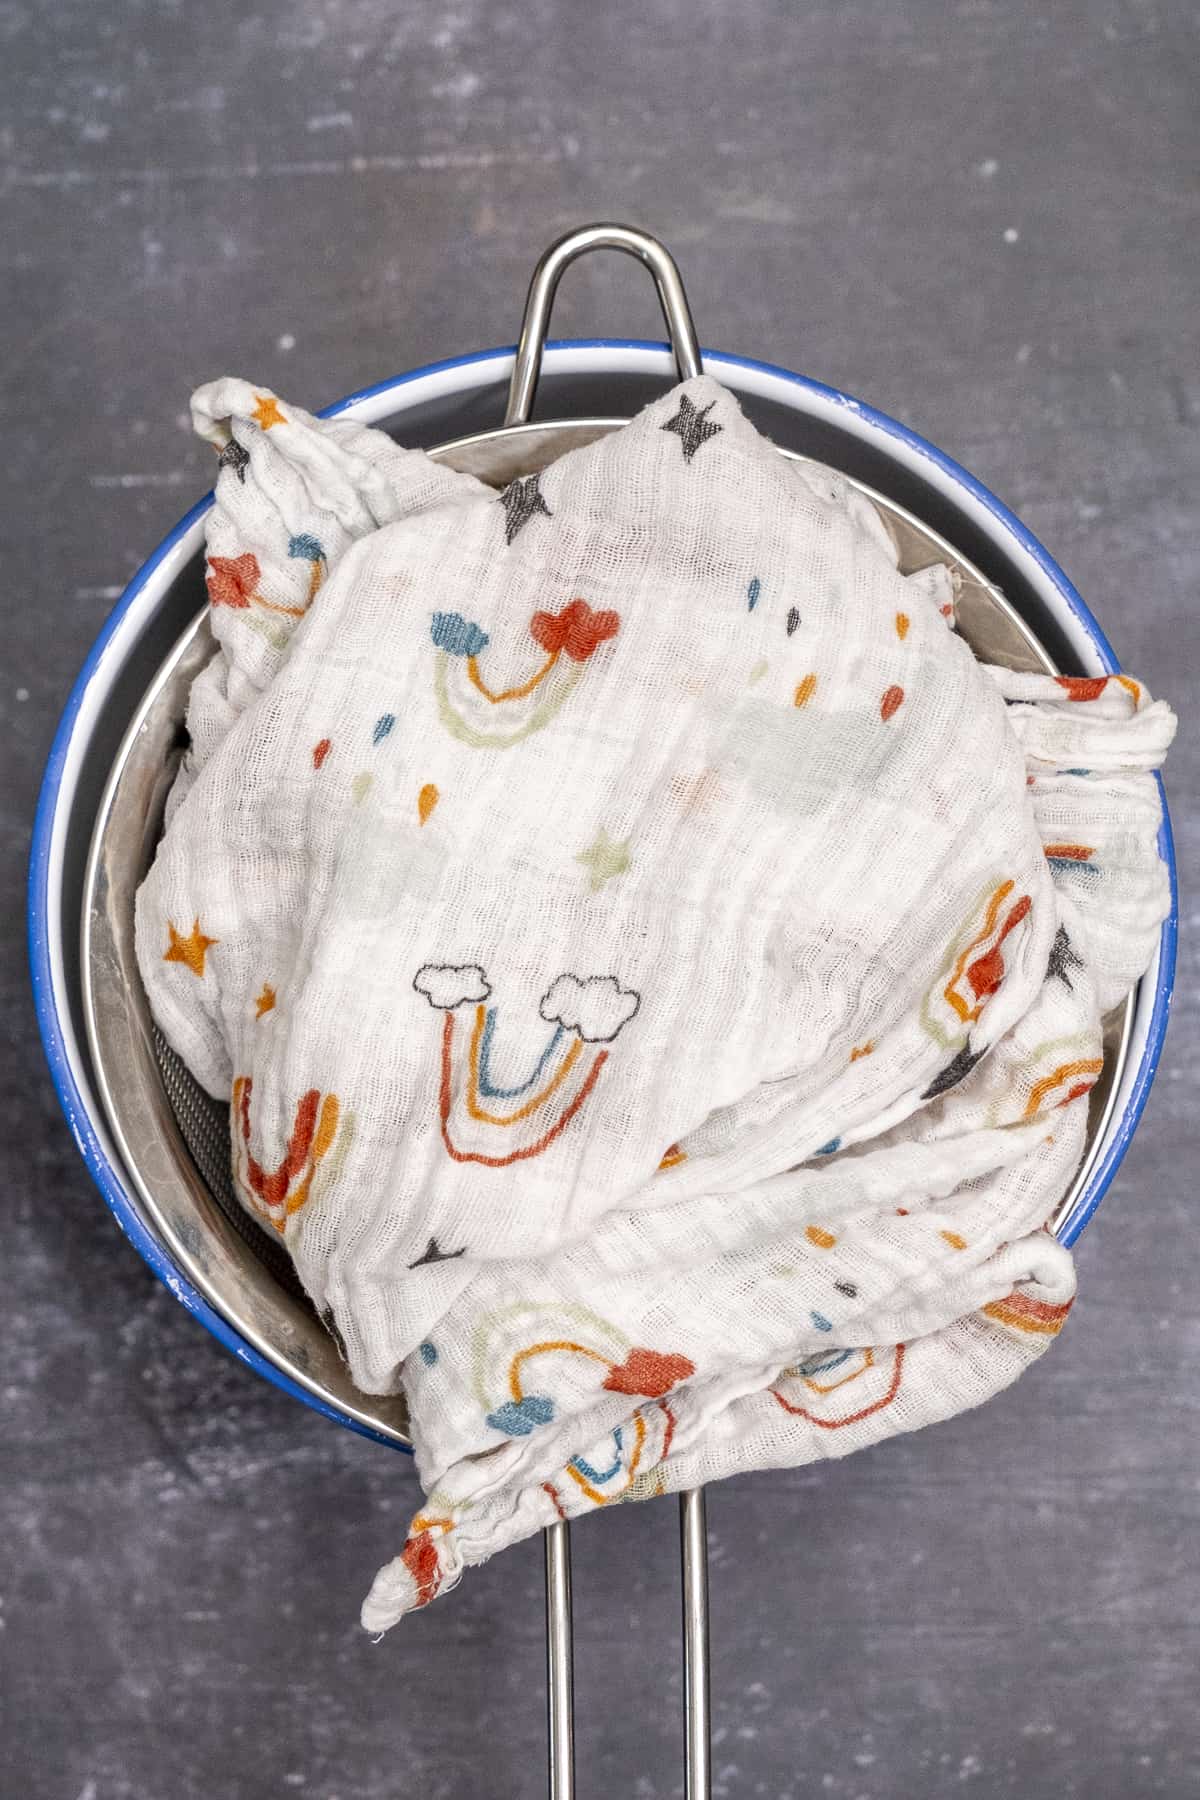 把细棉布折叠在酸奶上，放在一个大碗上的滤网里。